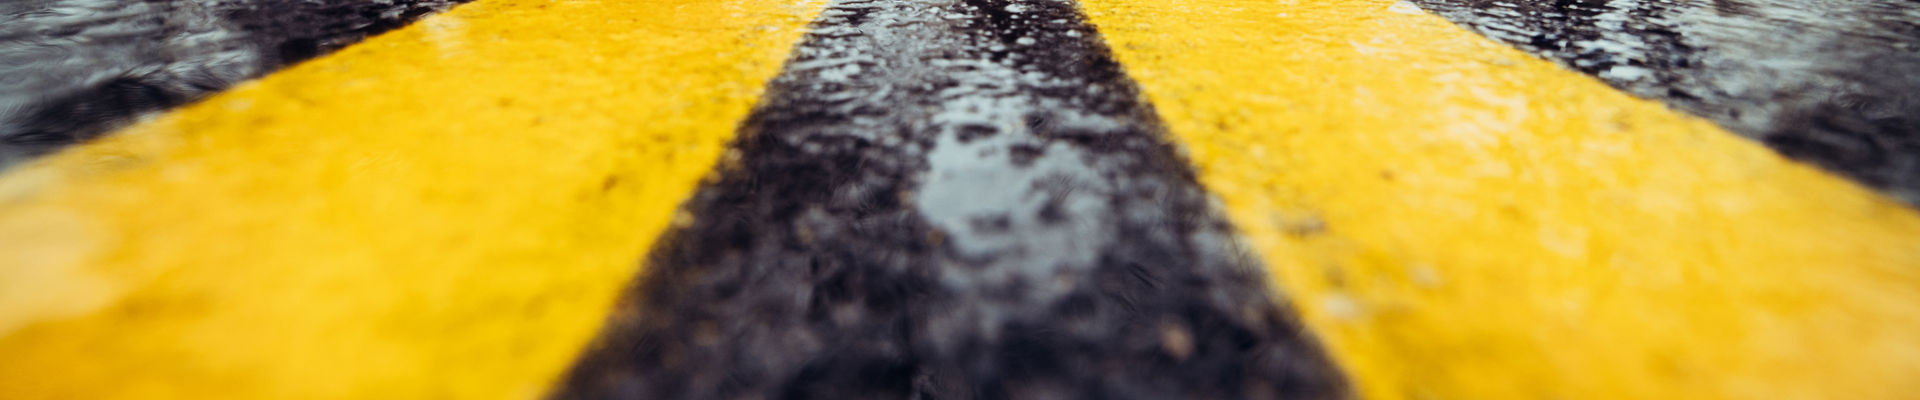 sinalização amarela no asfalto úmido